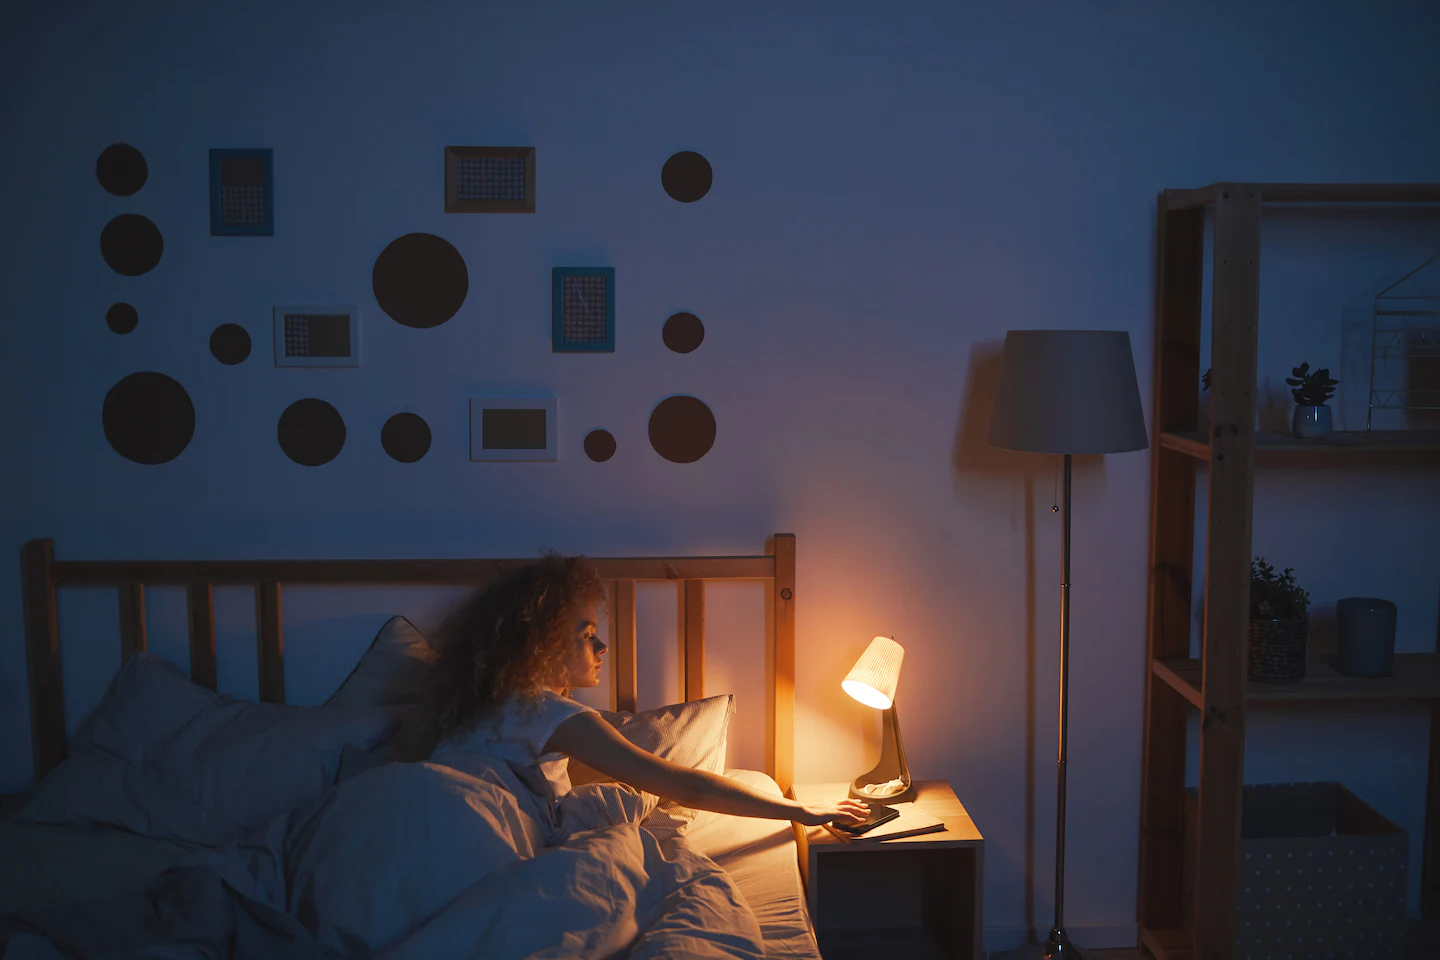 Dormir com a luz acesa pode ser ruim para você